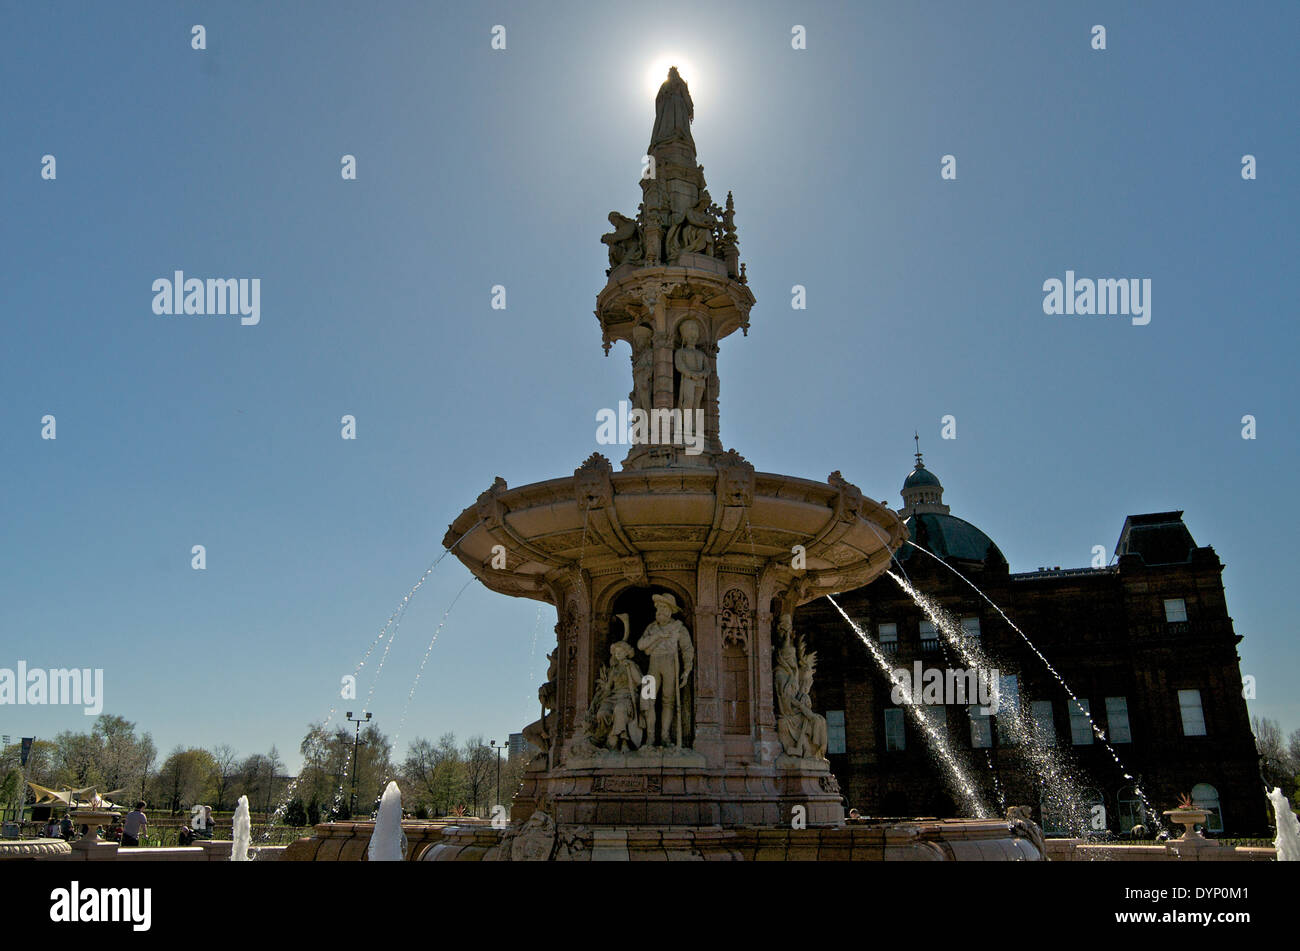 The Doulton Fountain on Glasgow Green, Glasgow. Stock Photo